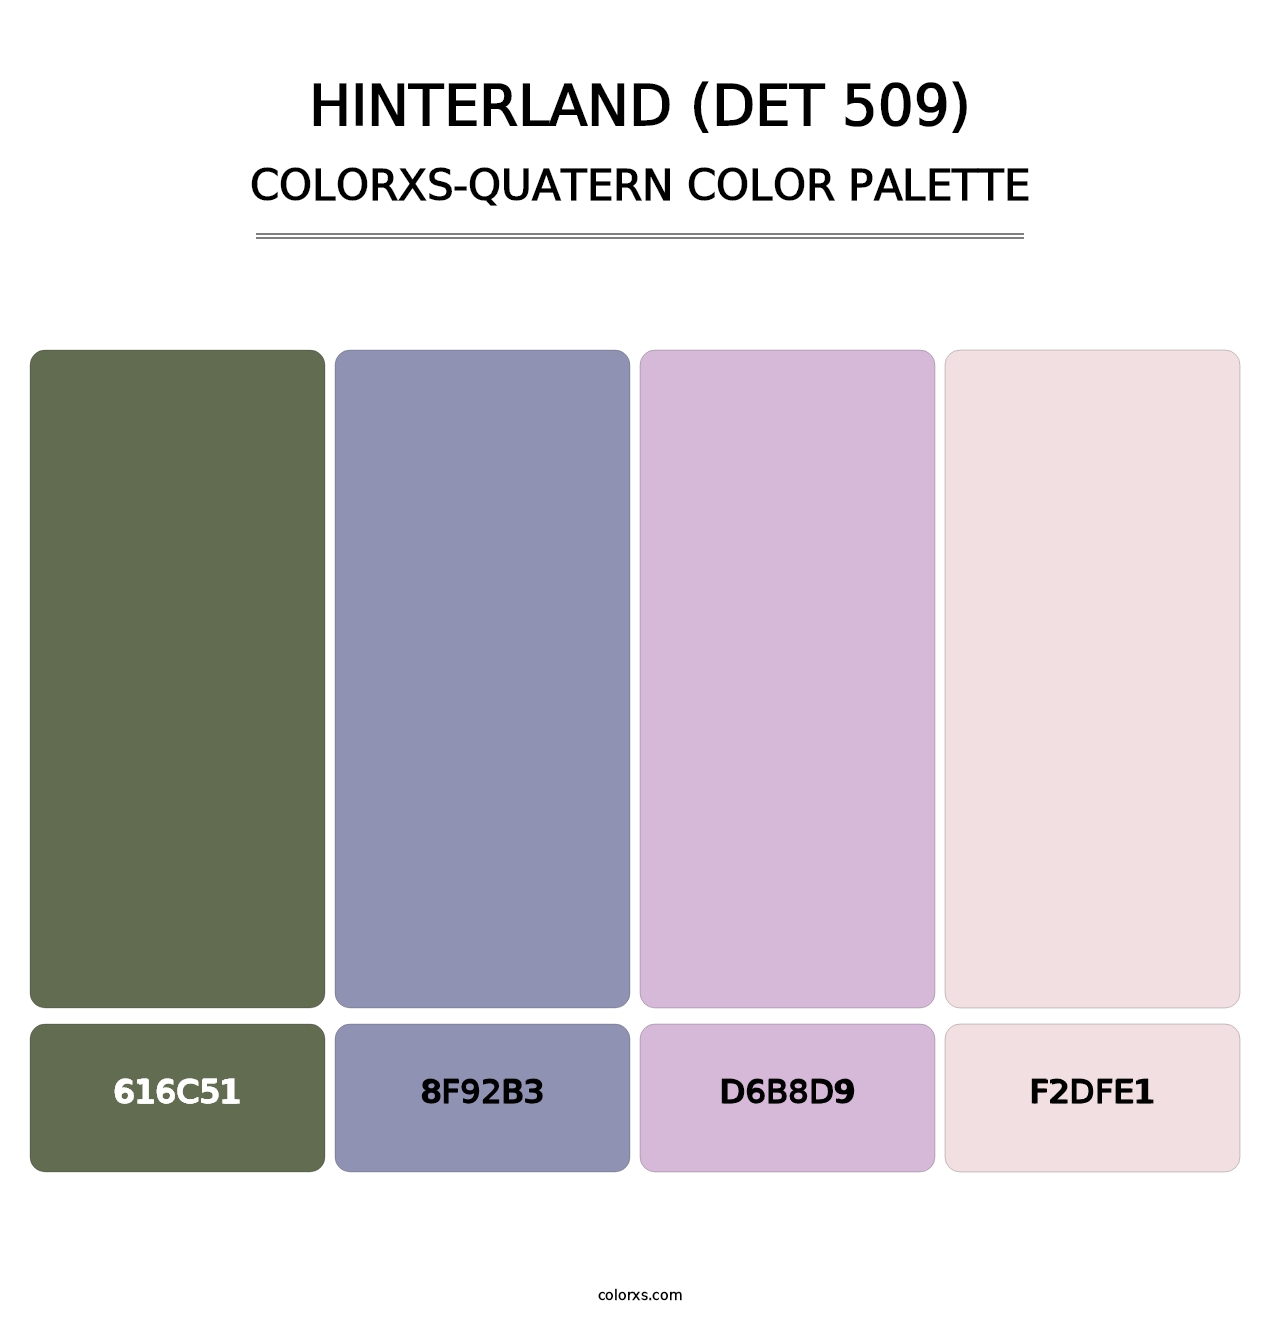 Hinterland (DET 509) - Colorxs Quatern Palette